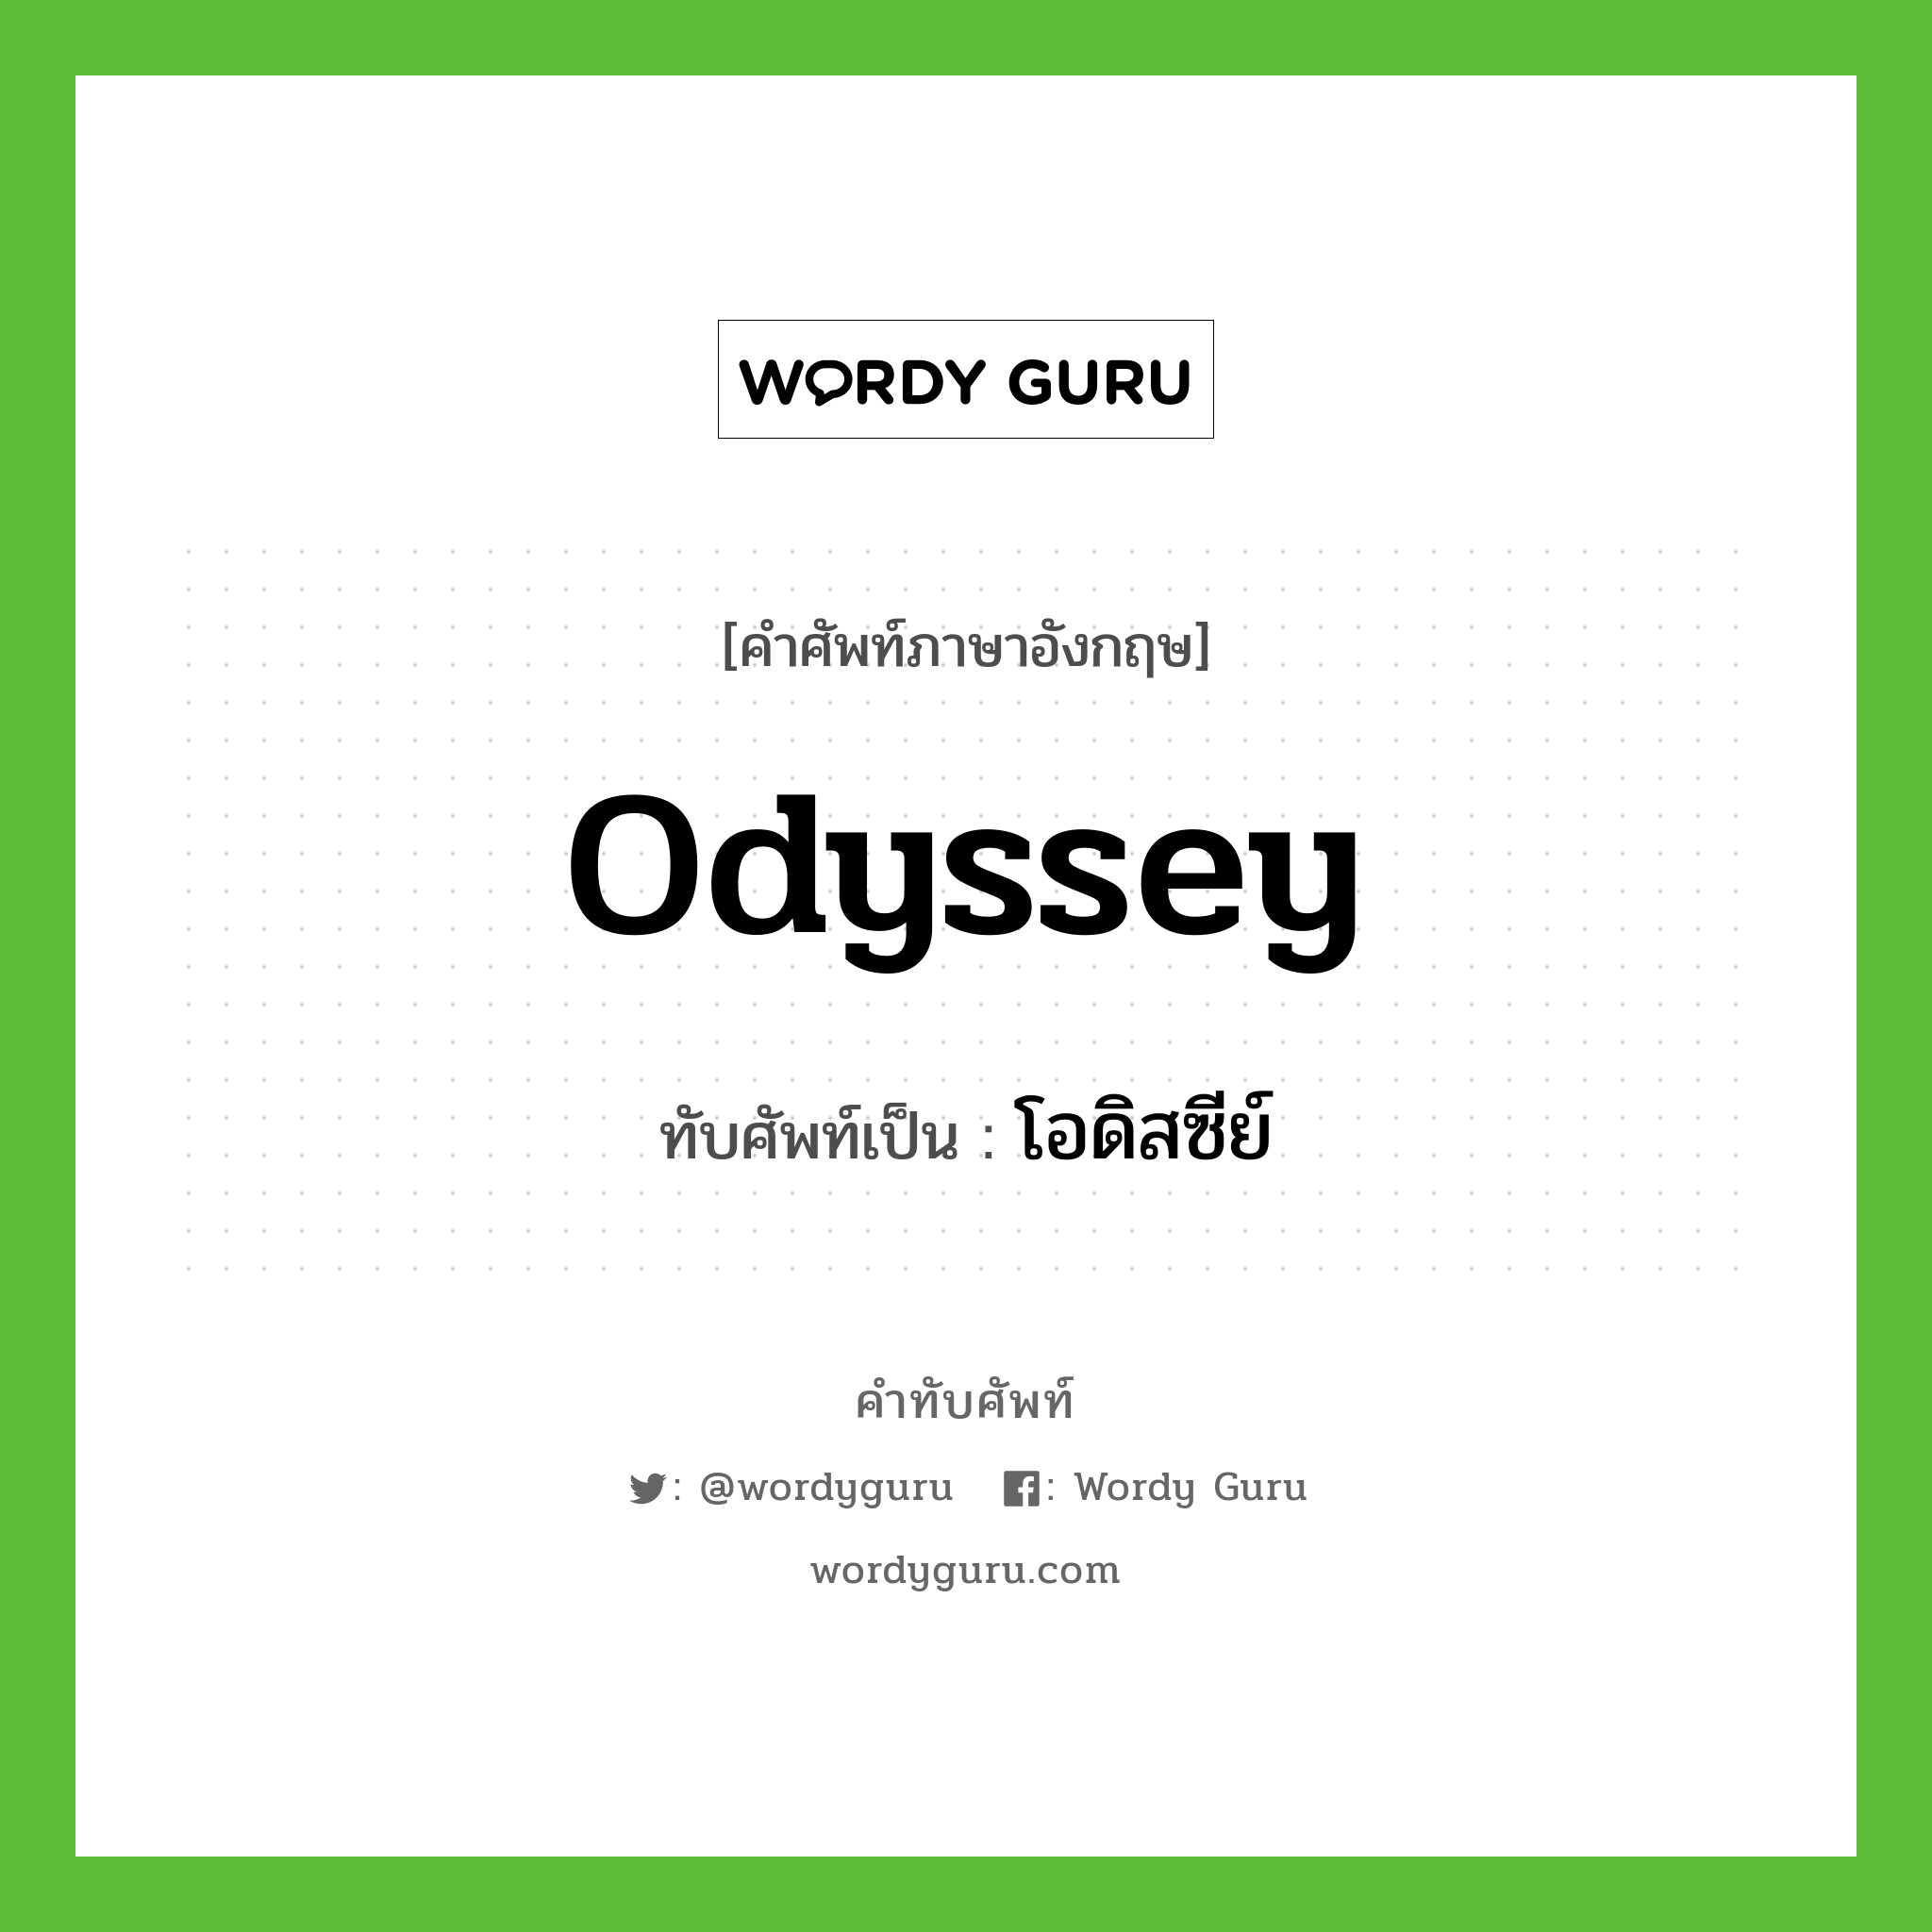 Odyssey เขียนเป็นคำไทยว่าอะไร?, คำศัพท์ภาษาอังกฤษ Odyssey ทับศัพท์เป็น โอดิสซีย์